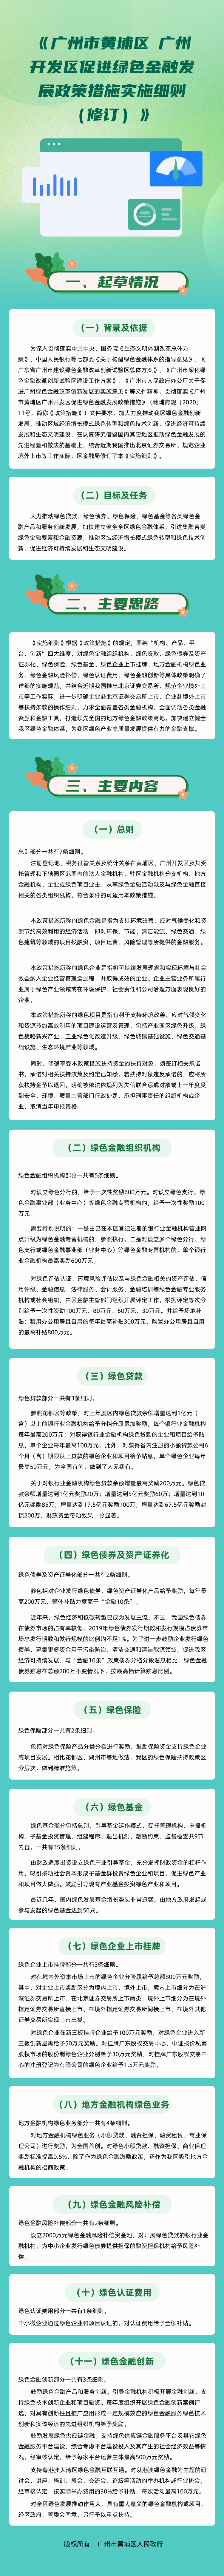 7《广州市黄埔区 广州开发区促进绿色金融发展政策措施实施细则（修订）》.png